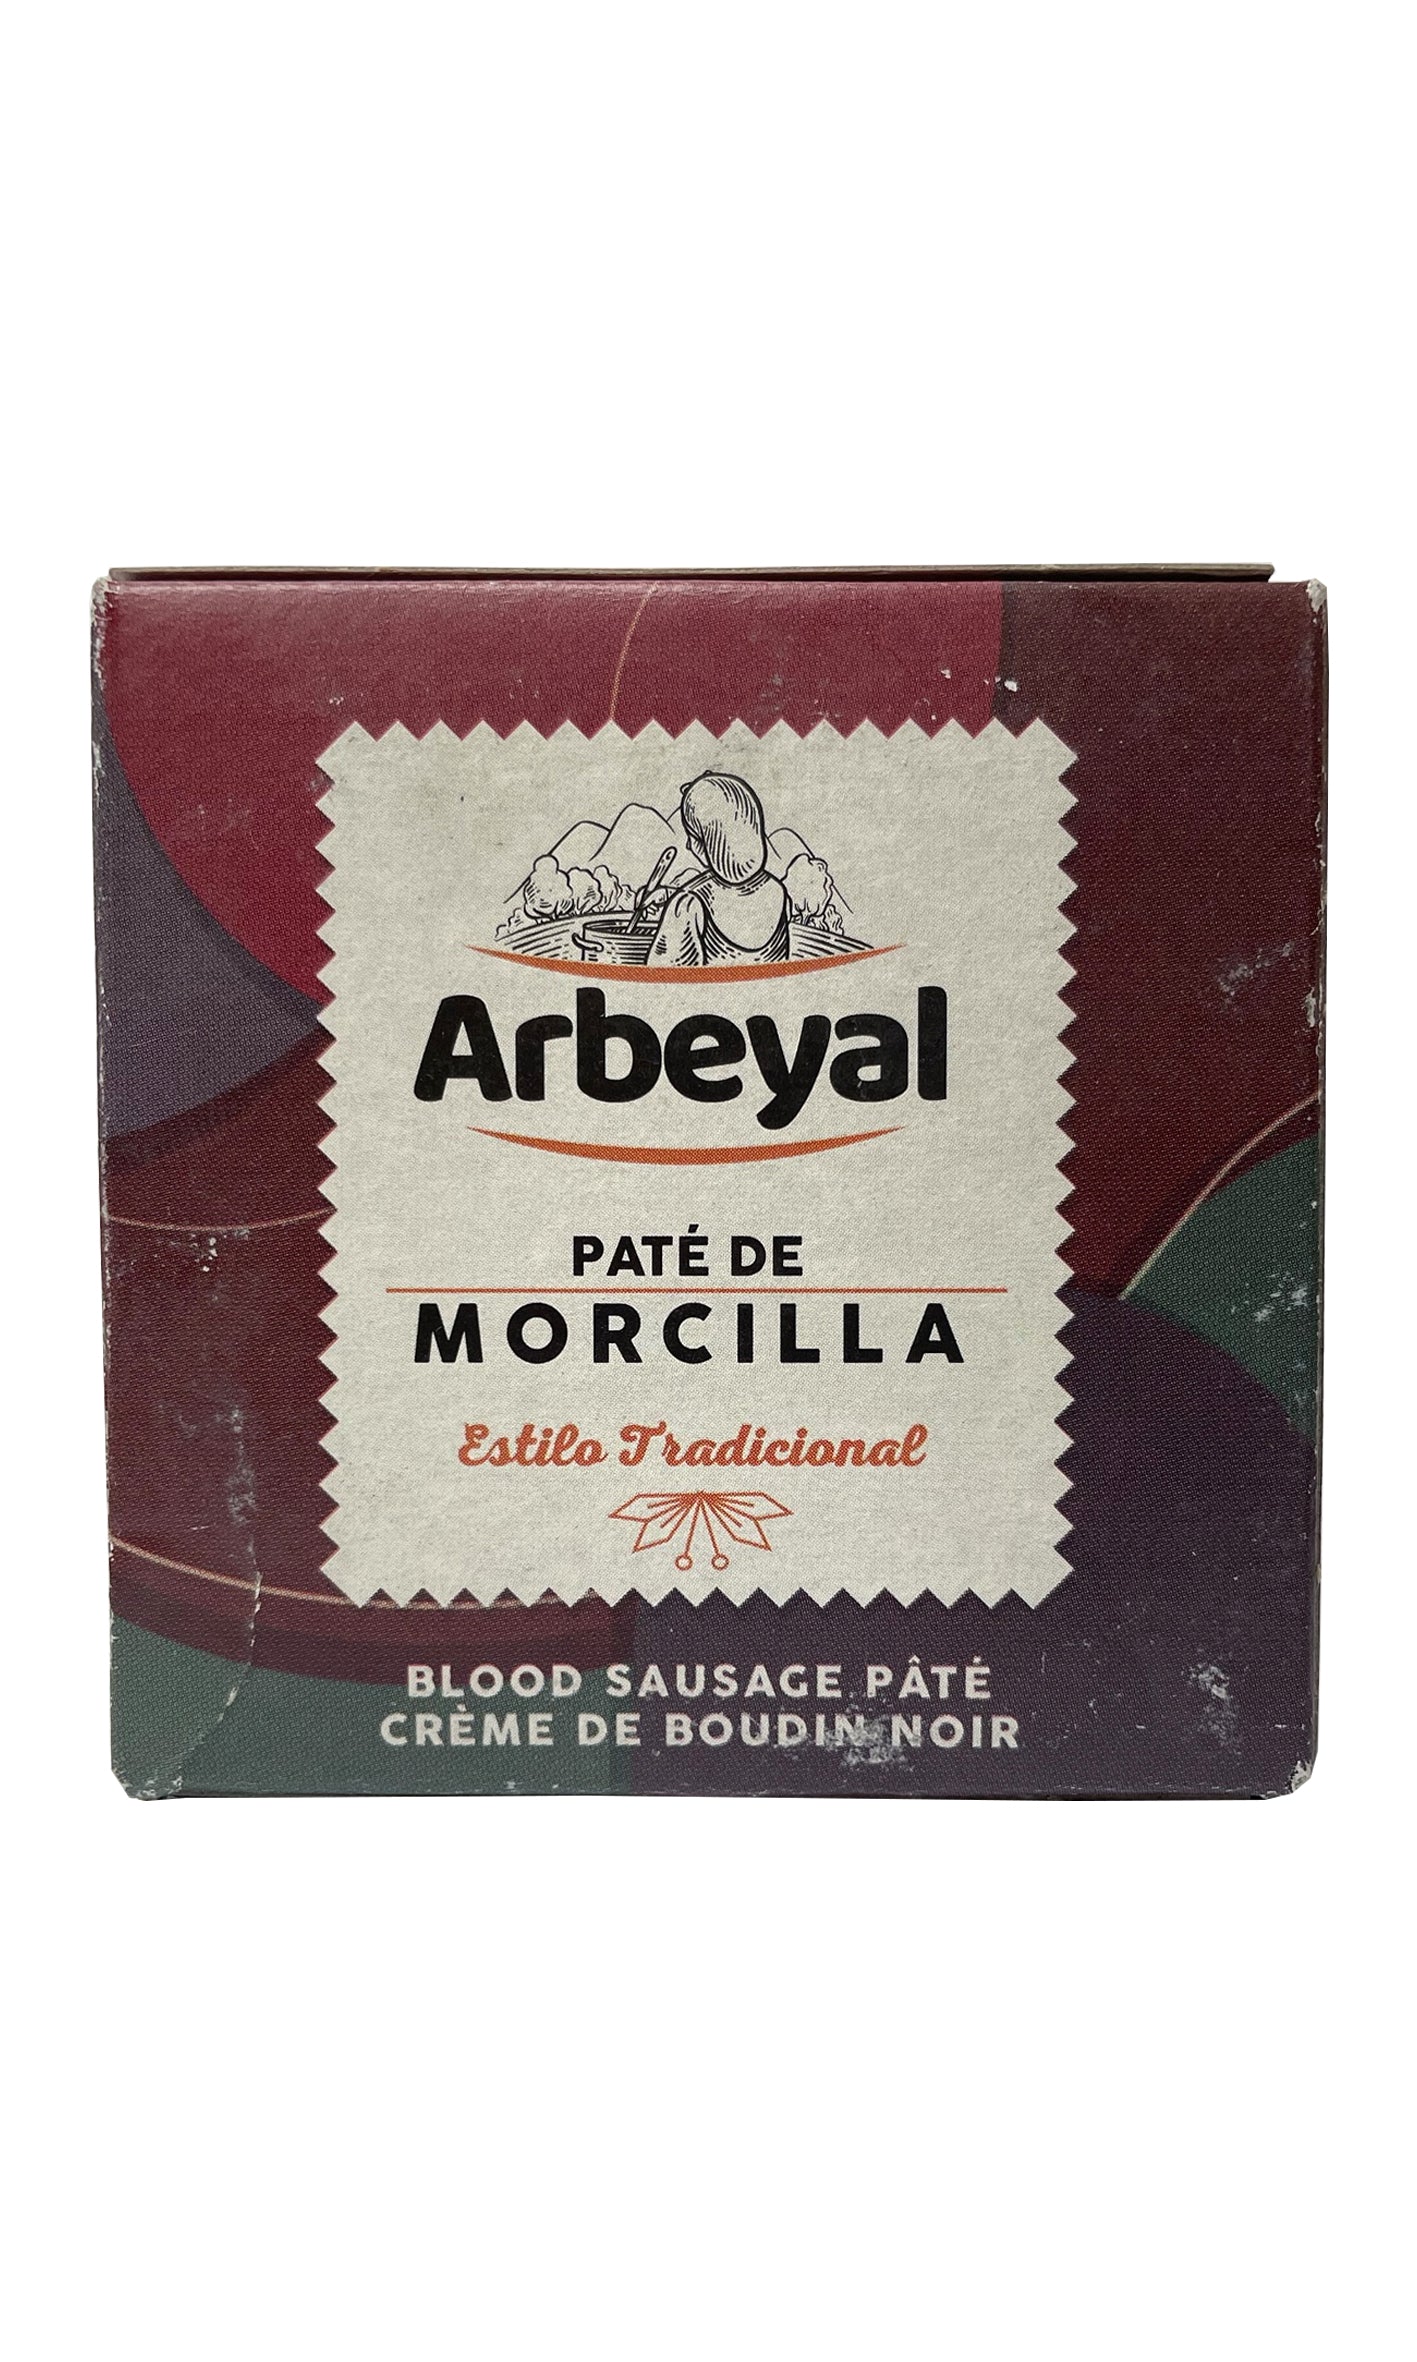 Arbeyal - Morcilla (Blood Sausage) Paté - 100g